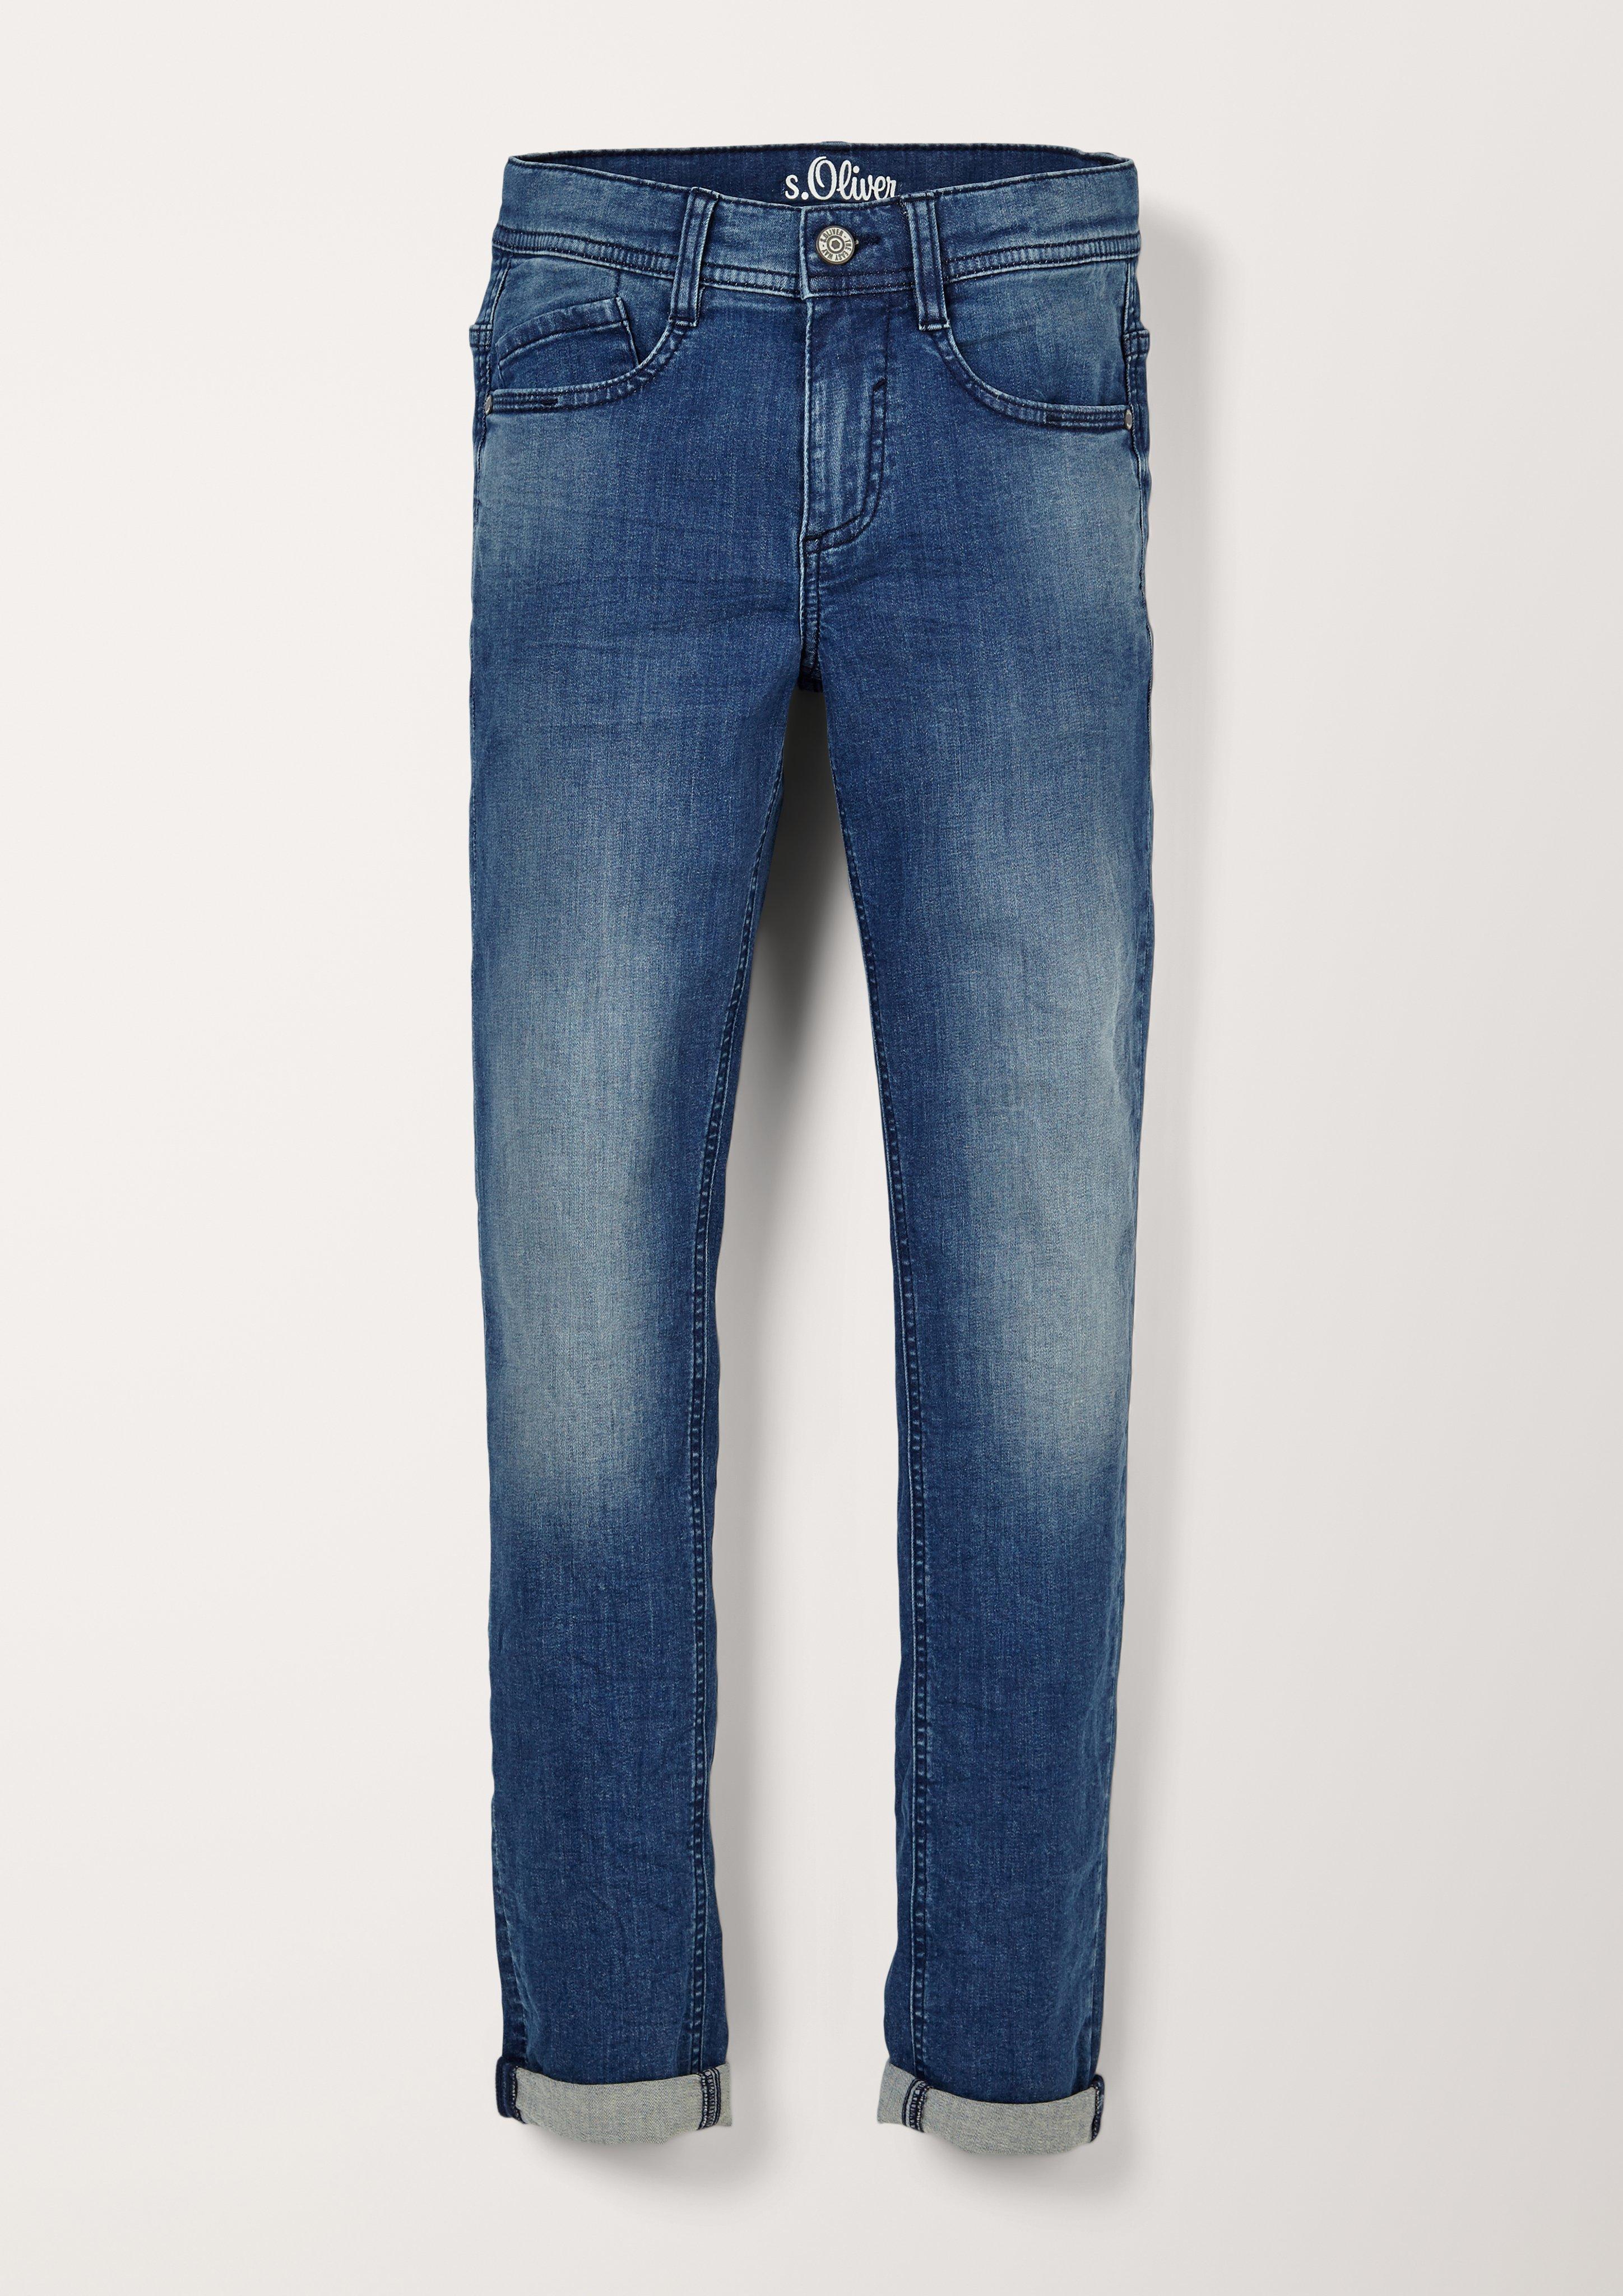 Shop jeans - dark blue | s.Oliver